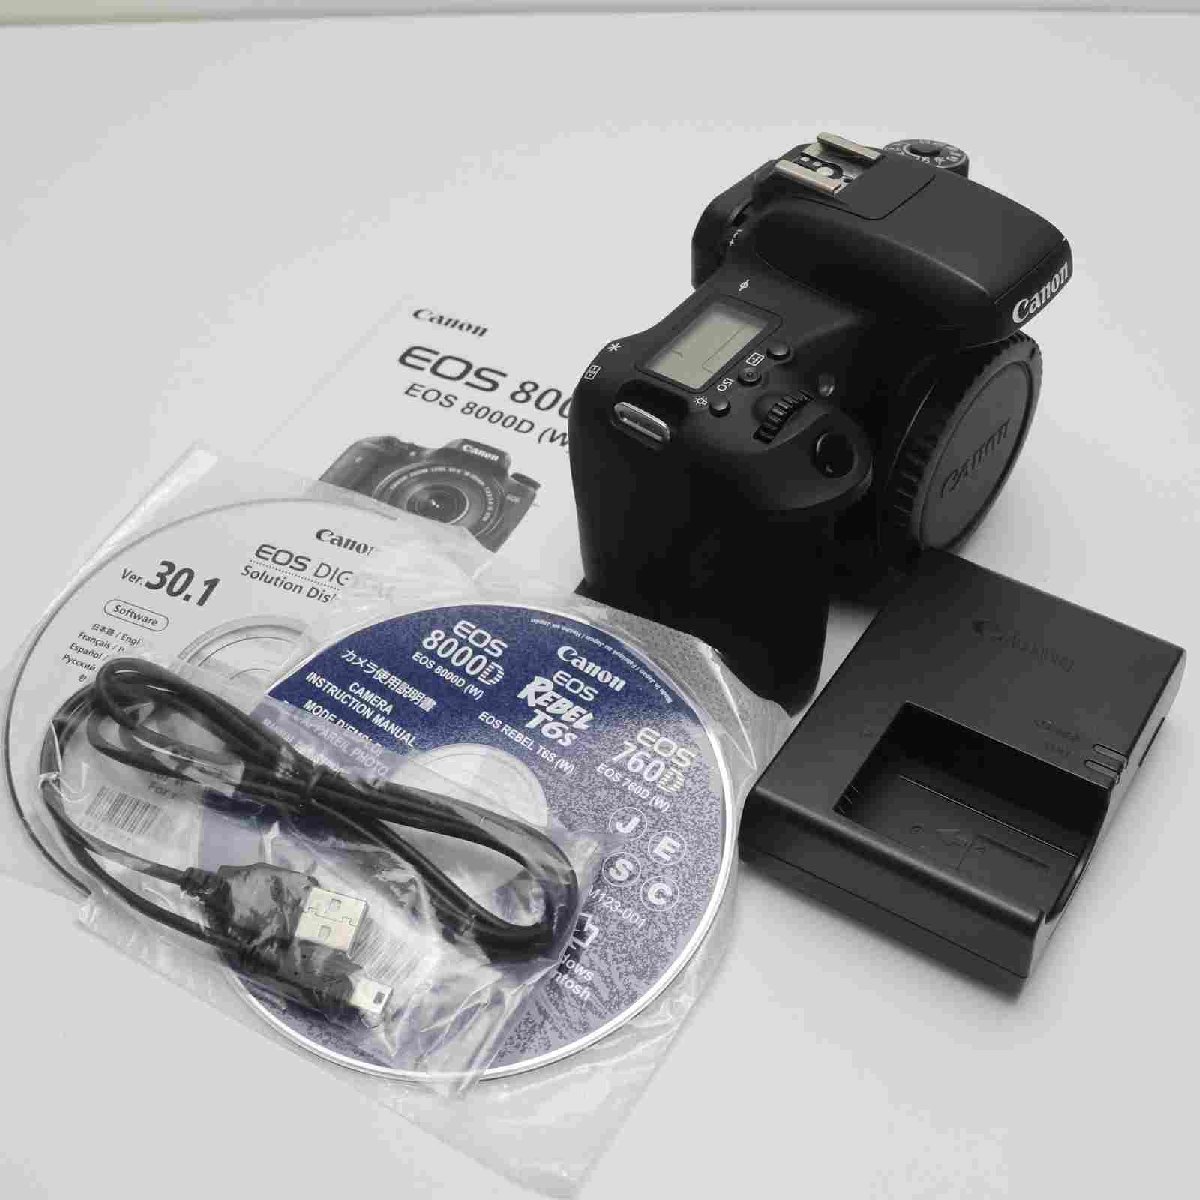 【中古】 超美品 EOS 8000D ブラック 安心保証 即日発送 一眼レフ Canon 本体 あす楽 土日祝発送OK